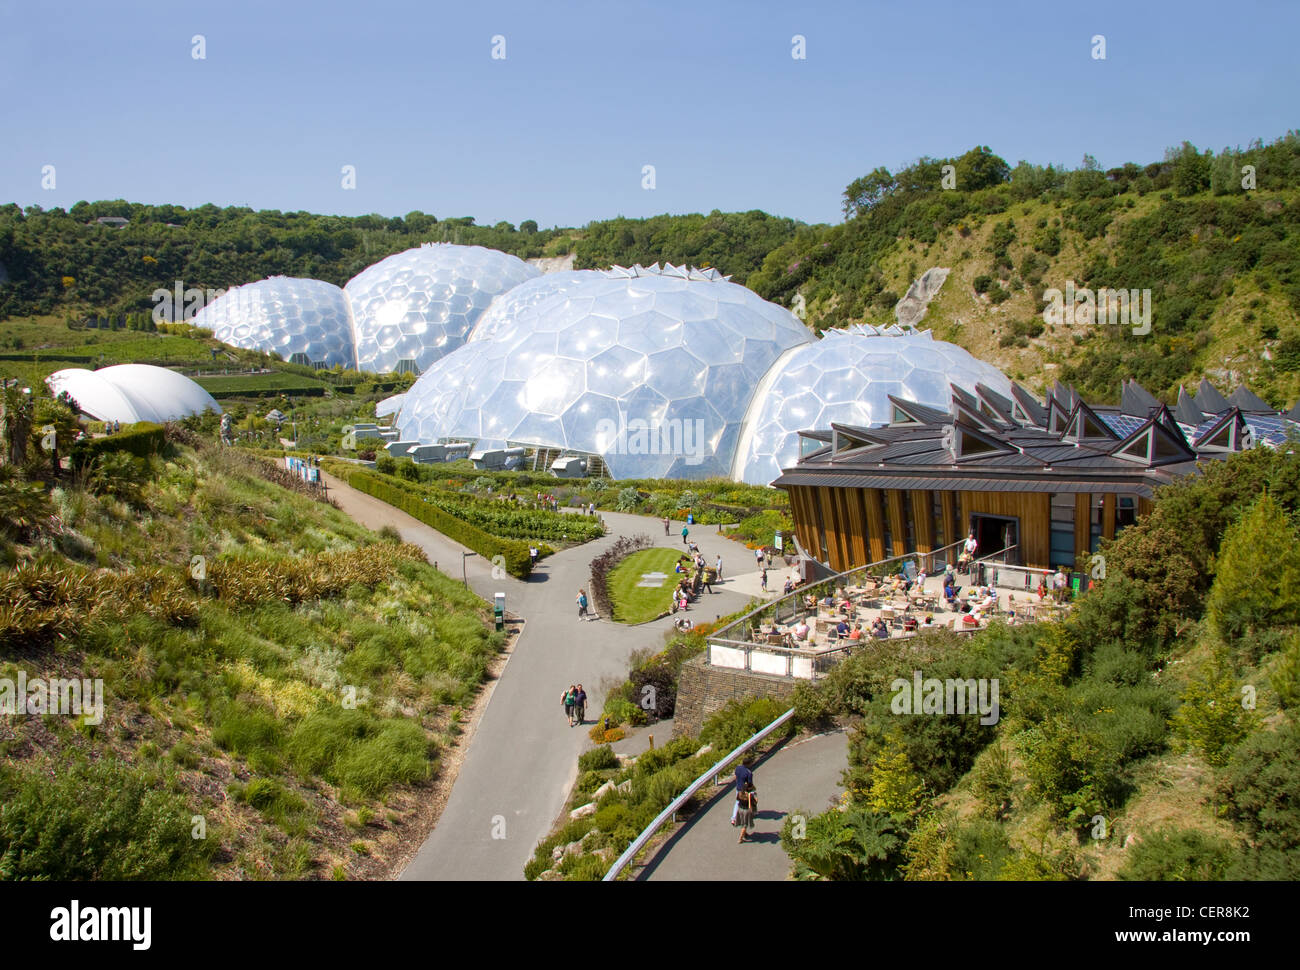 Vue extérieure de l'biomes futuriste de l'Eden Project dans la région de Cornwall. Banque D'Images